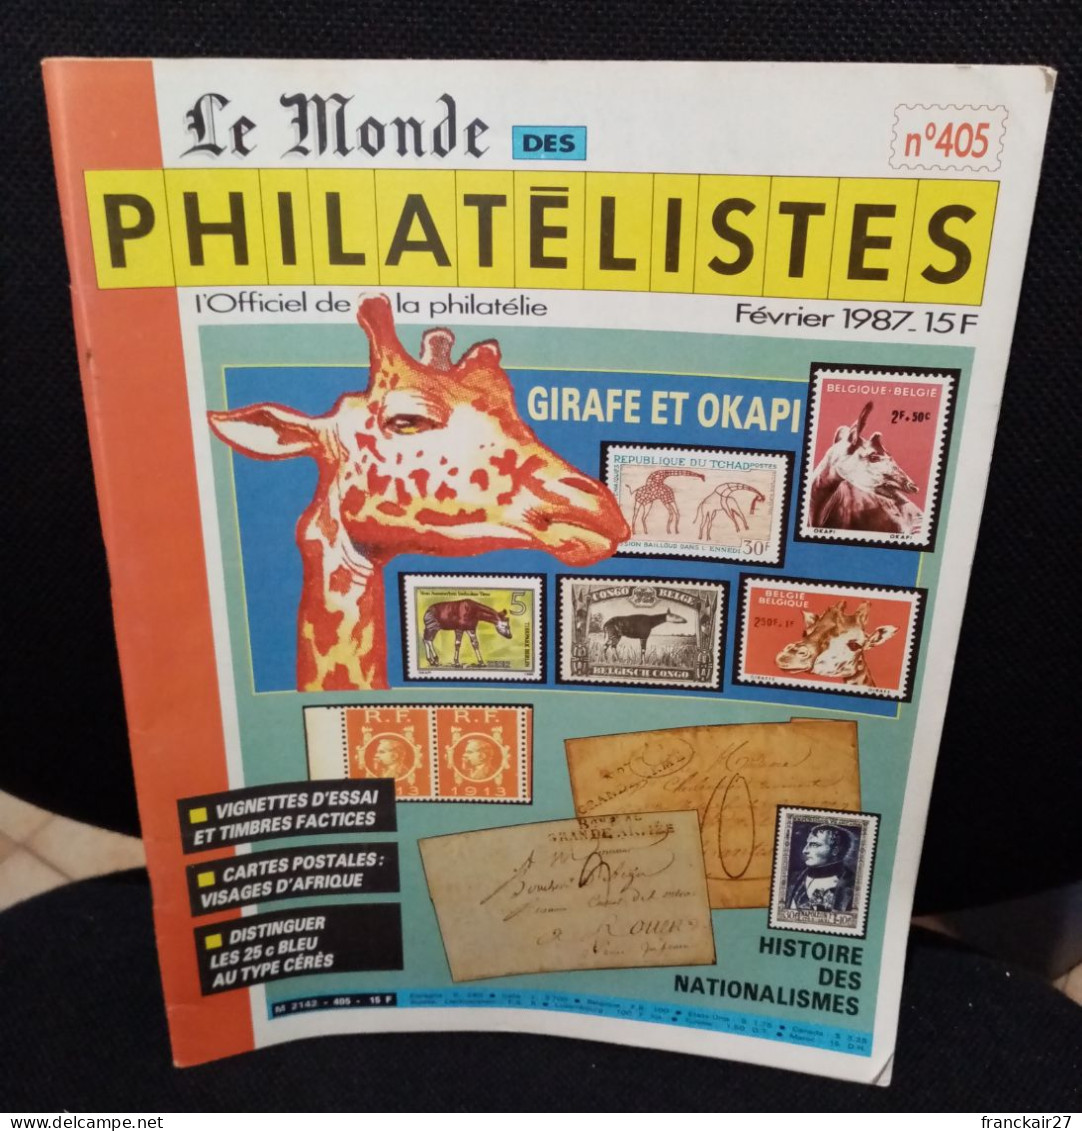 Le Monde Des Philatélistes Thématique Girafes Et Okapi Février 1987 N° 405. - French